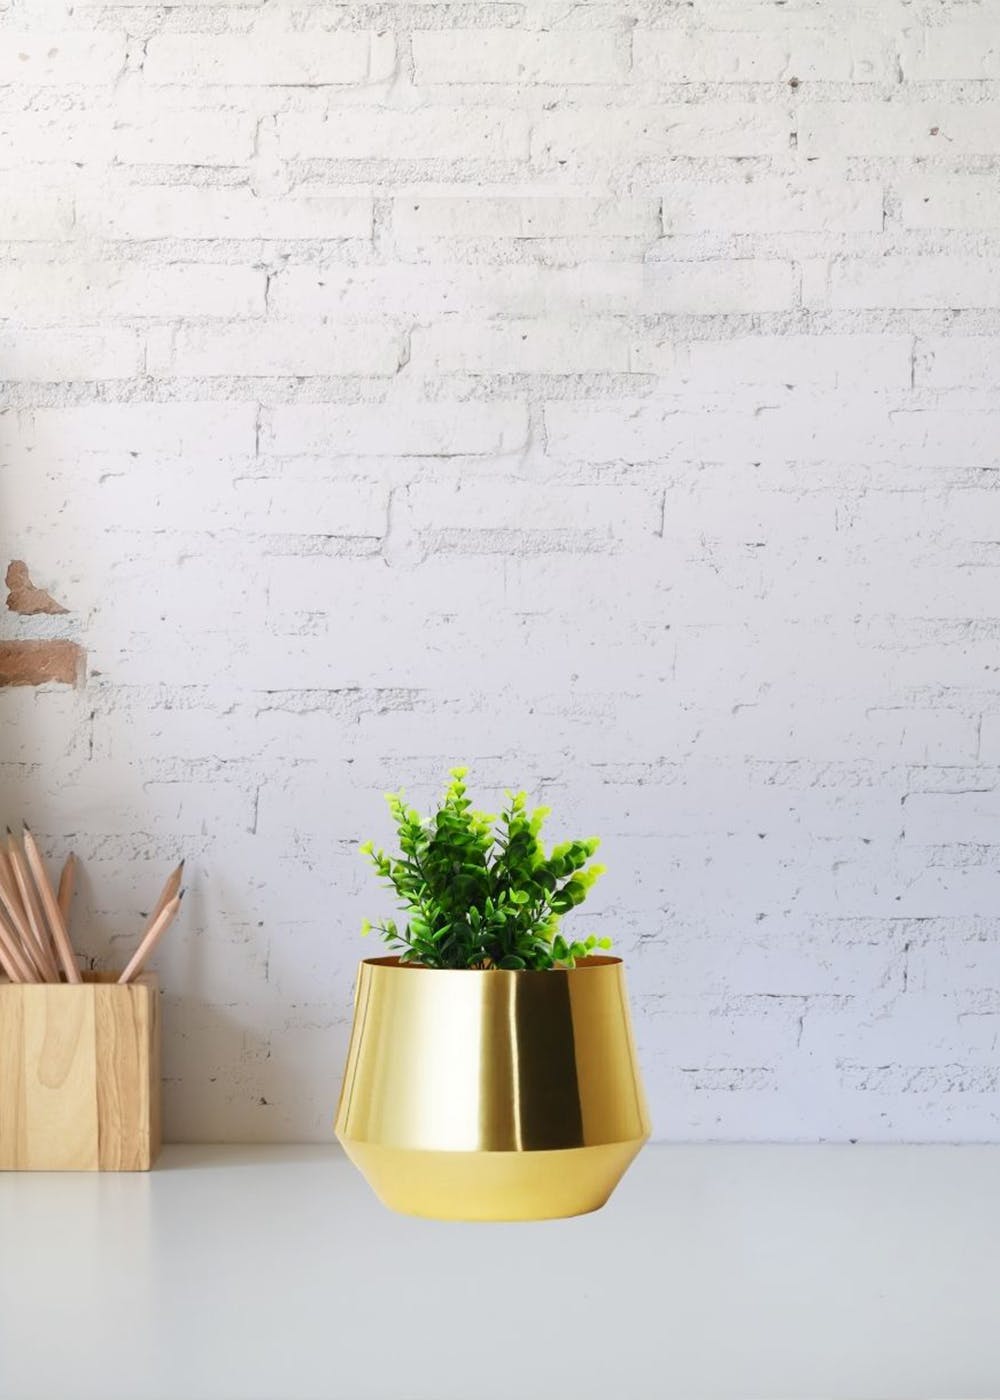 Louis Vuitton unveils new gold-plated plant pot design